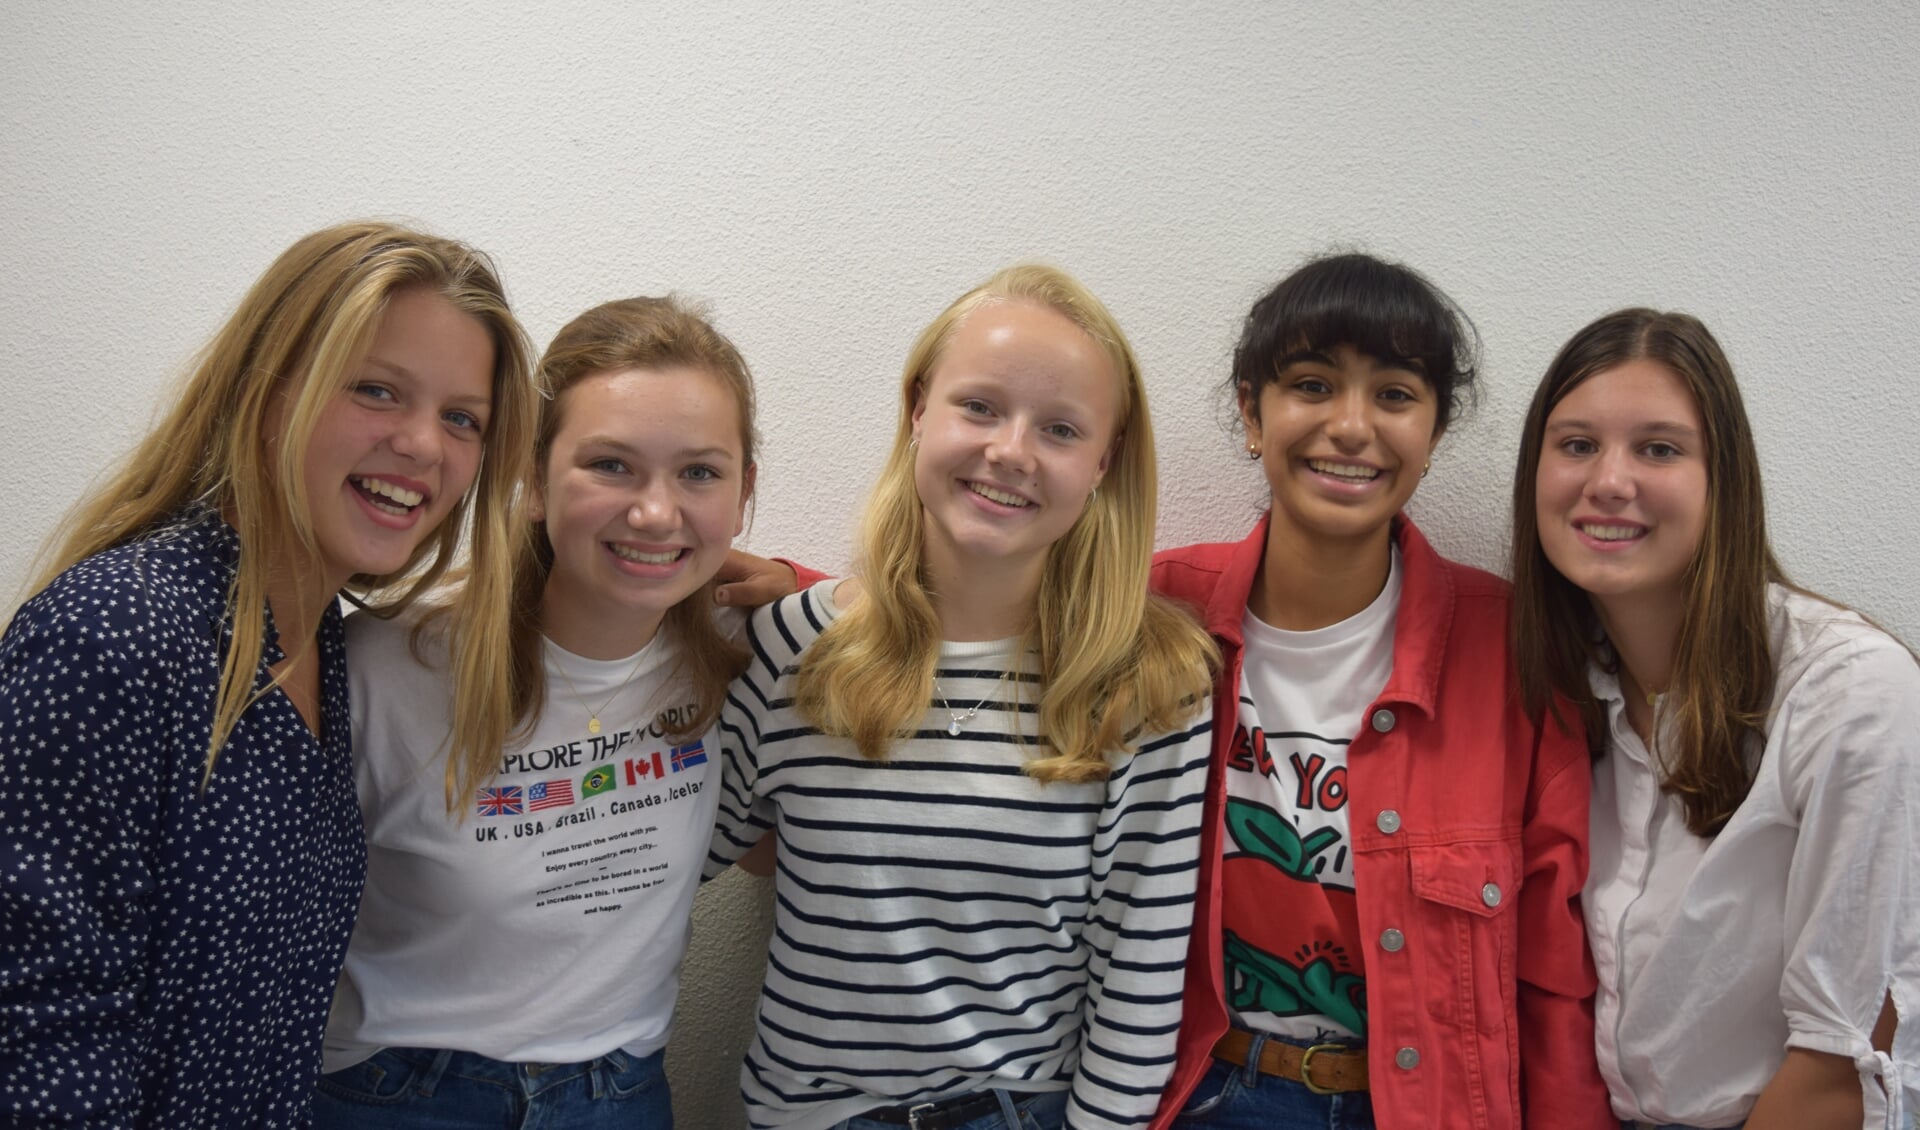  Alle derde klassers van het HNL proberen hun school droog te houden in de toekomst, met v.l.n.r. Feline Mooren, Estèle van de Berg, Emma van de Meer, Bente Benek en Sophie van de Heuvel.